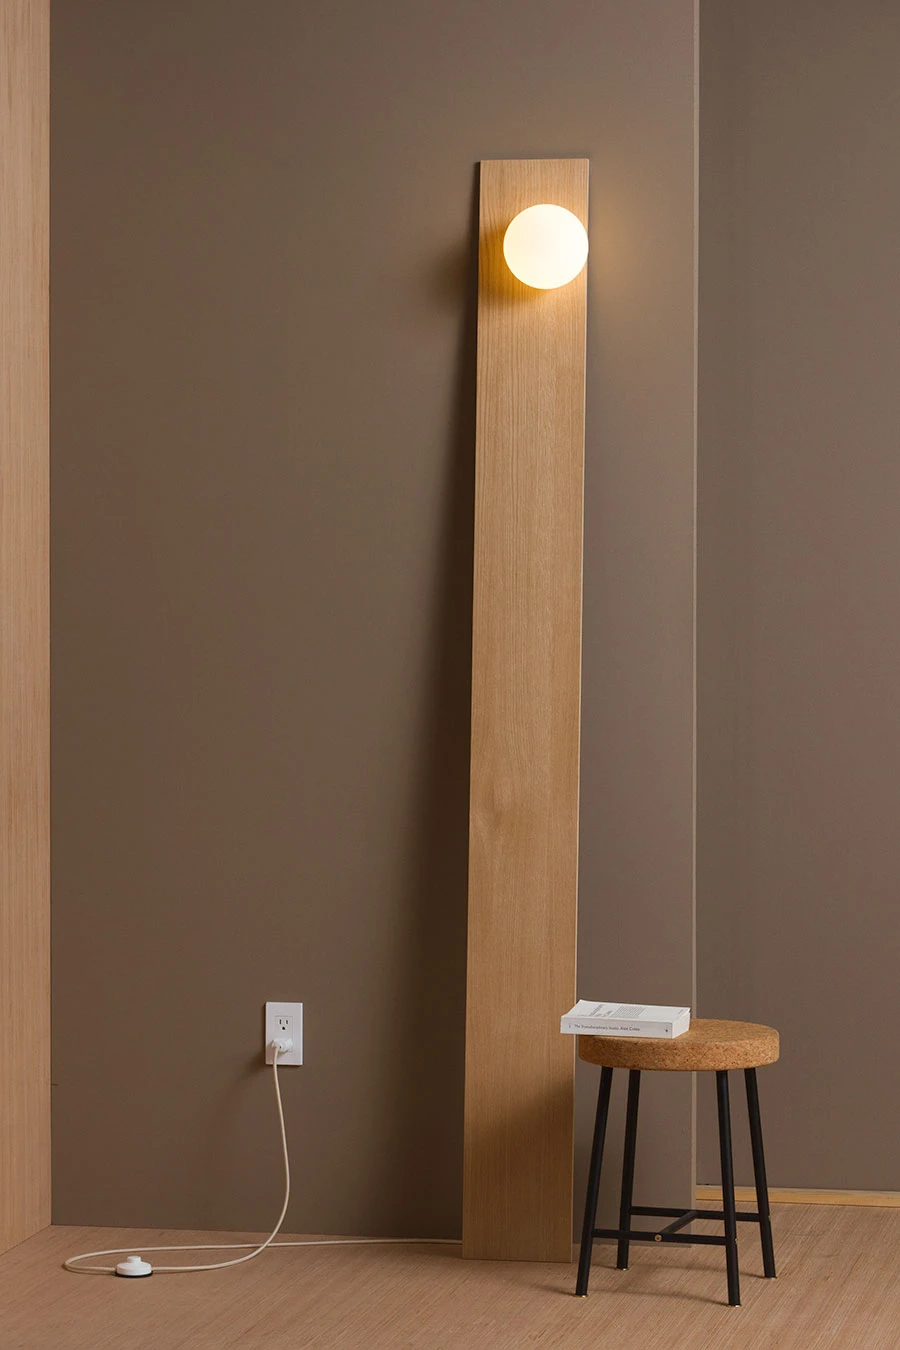 Tall - a floor lamp - Tall - a floor lamp -   19 diy Lamp modern ideas